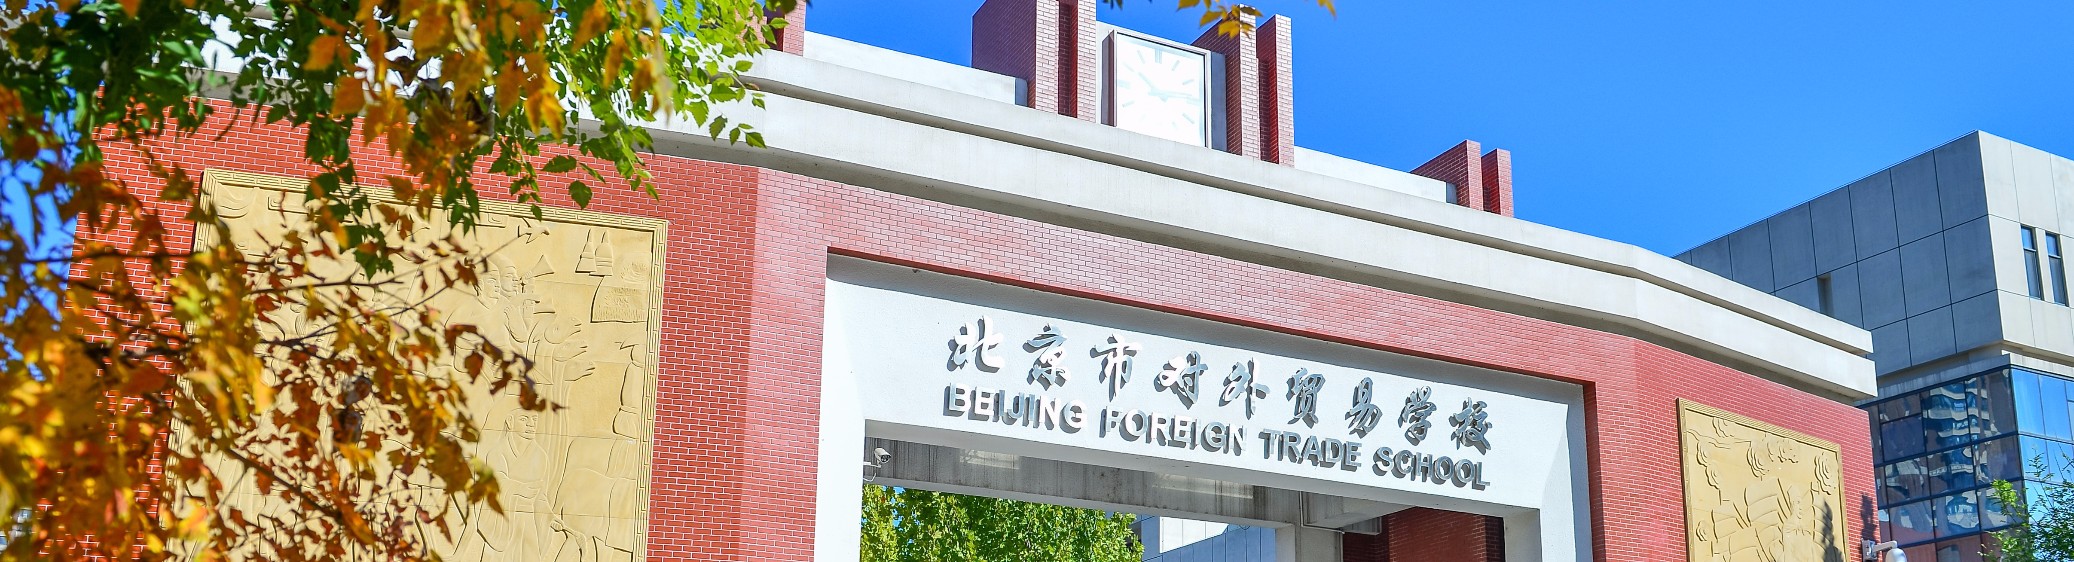 北京市对外贸易学校